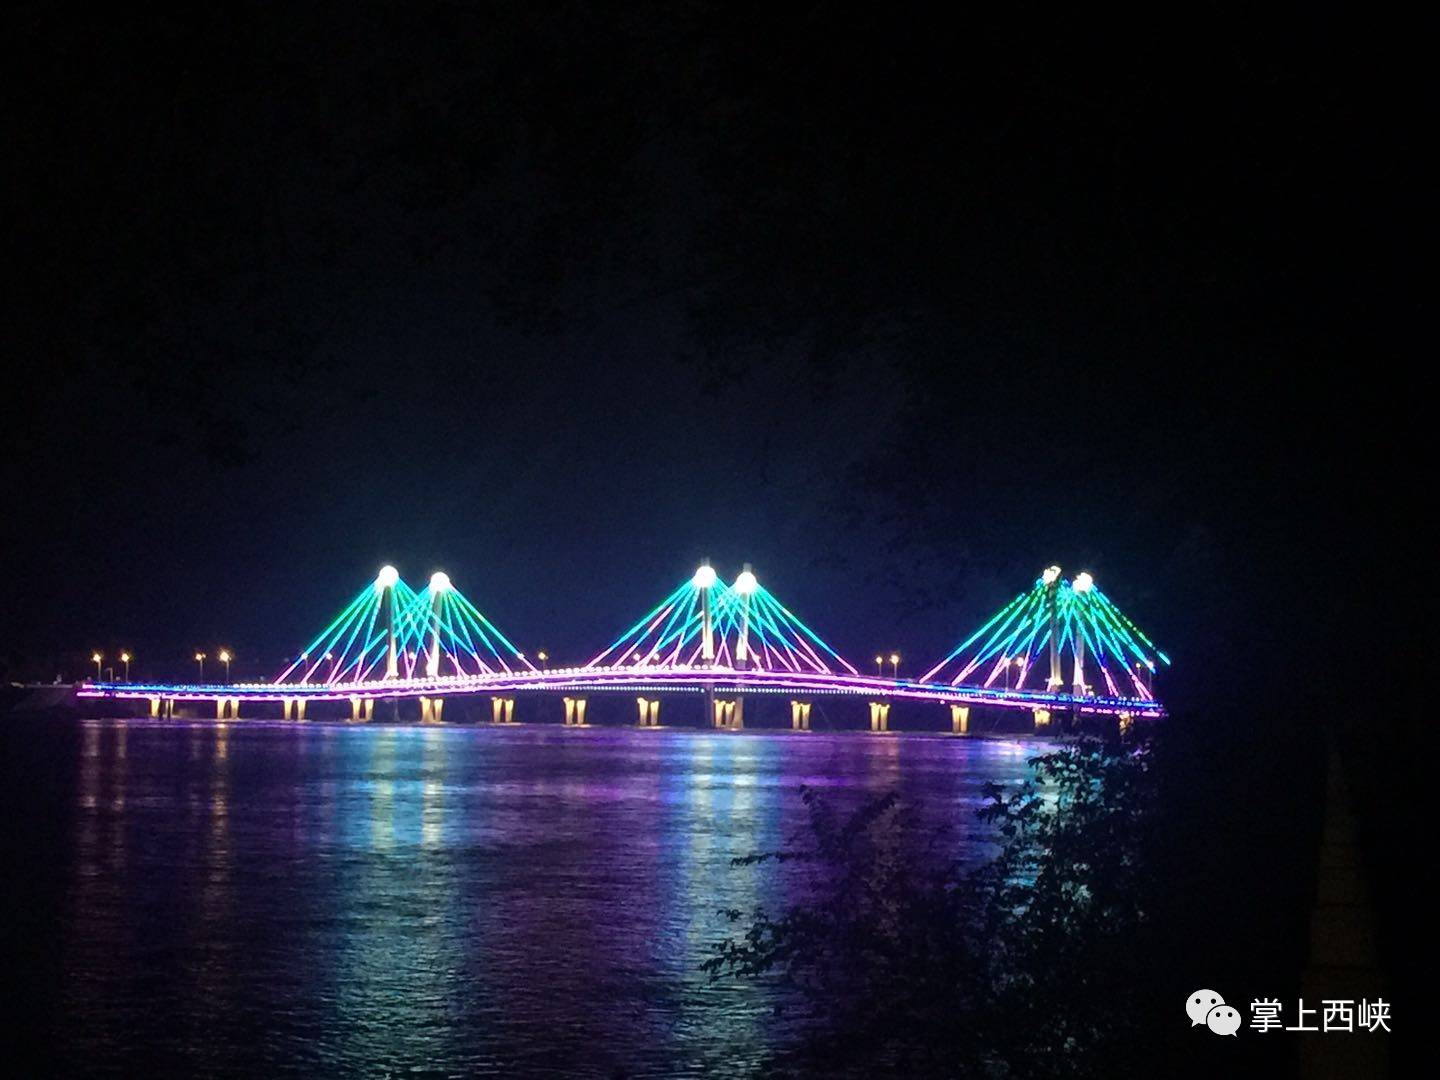 彩虹桥——灯与音乐共同打造出彩虹般的梦幻世界 | 建筑学院